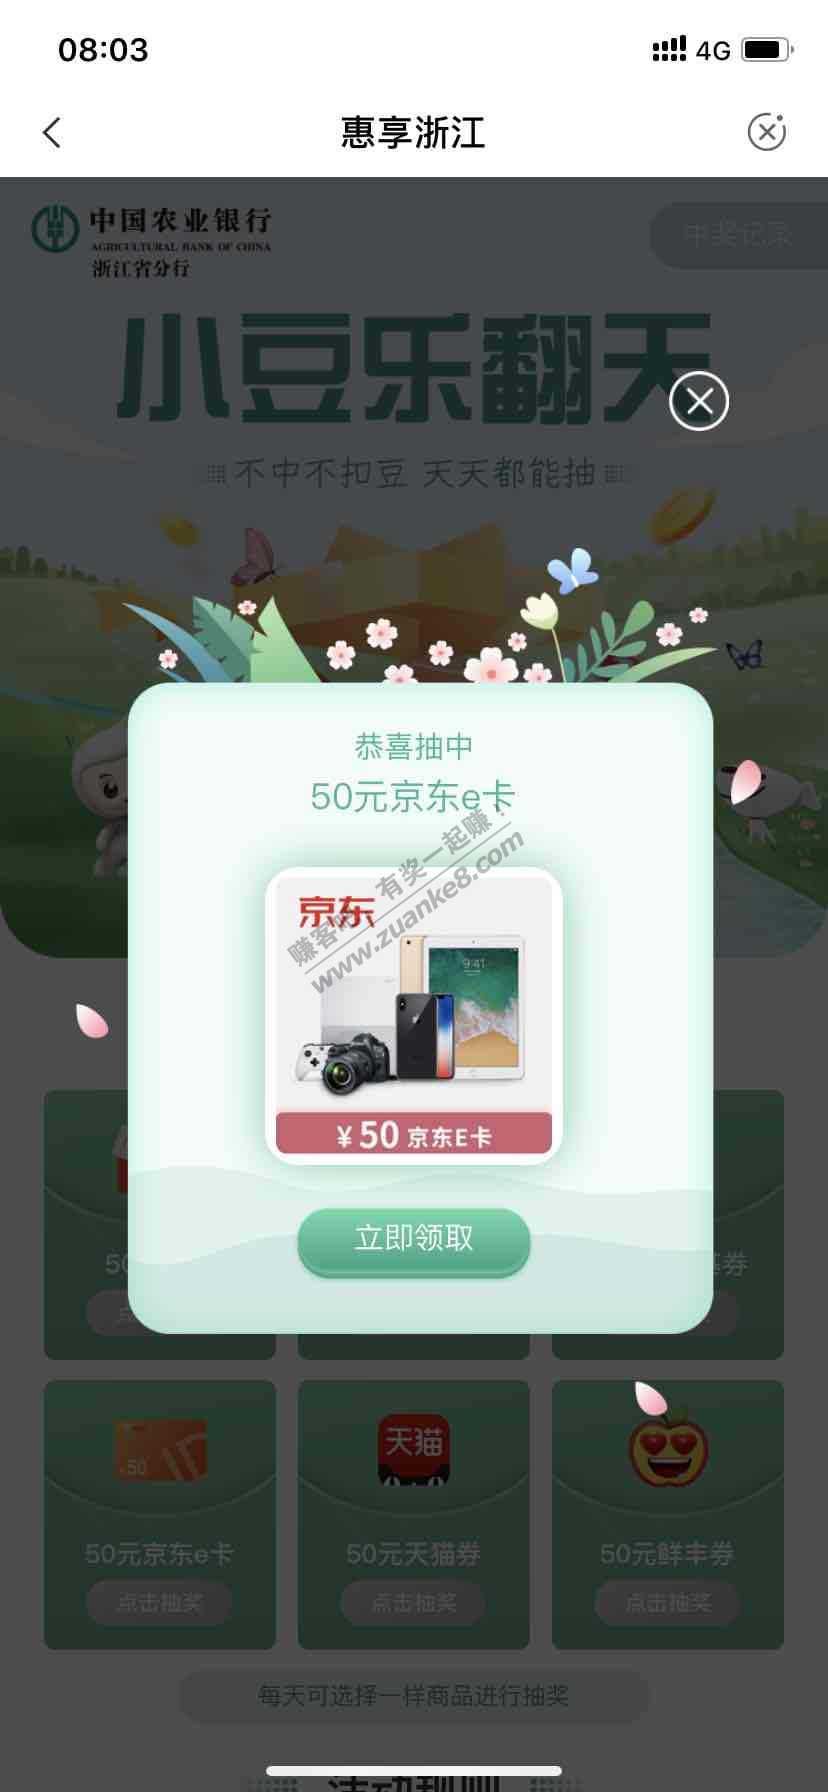 浙江农行5000小豆抽奖-惠小助(52huixz.com)